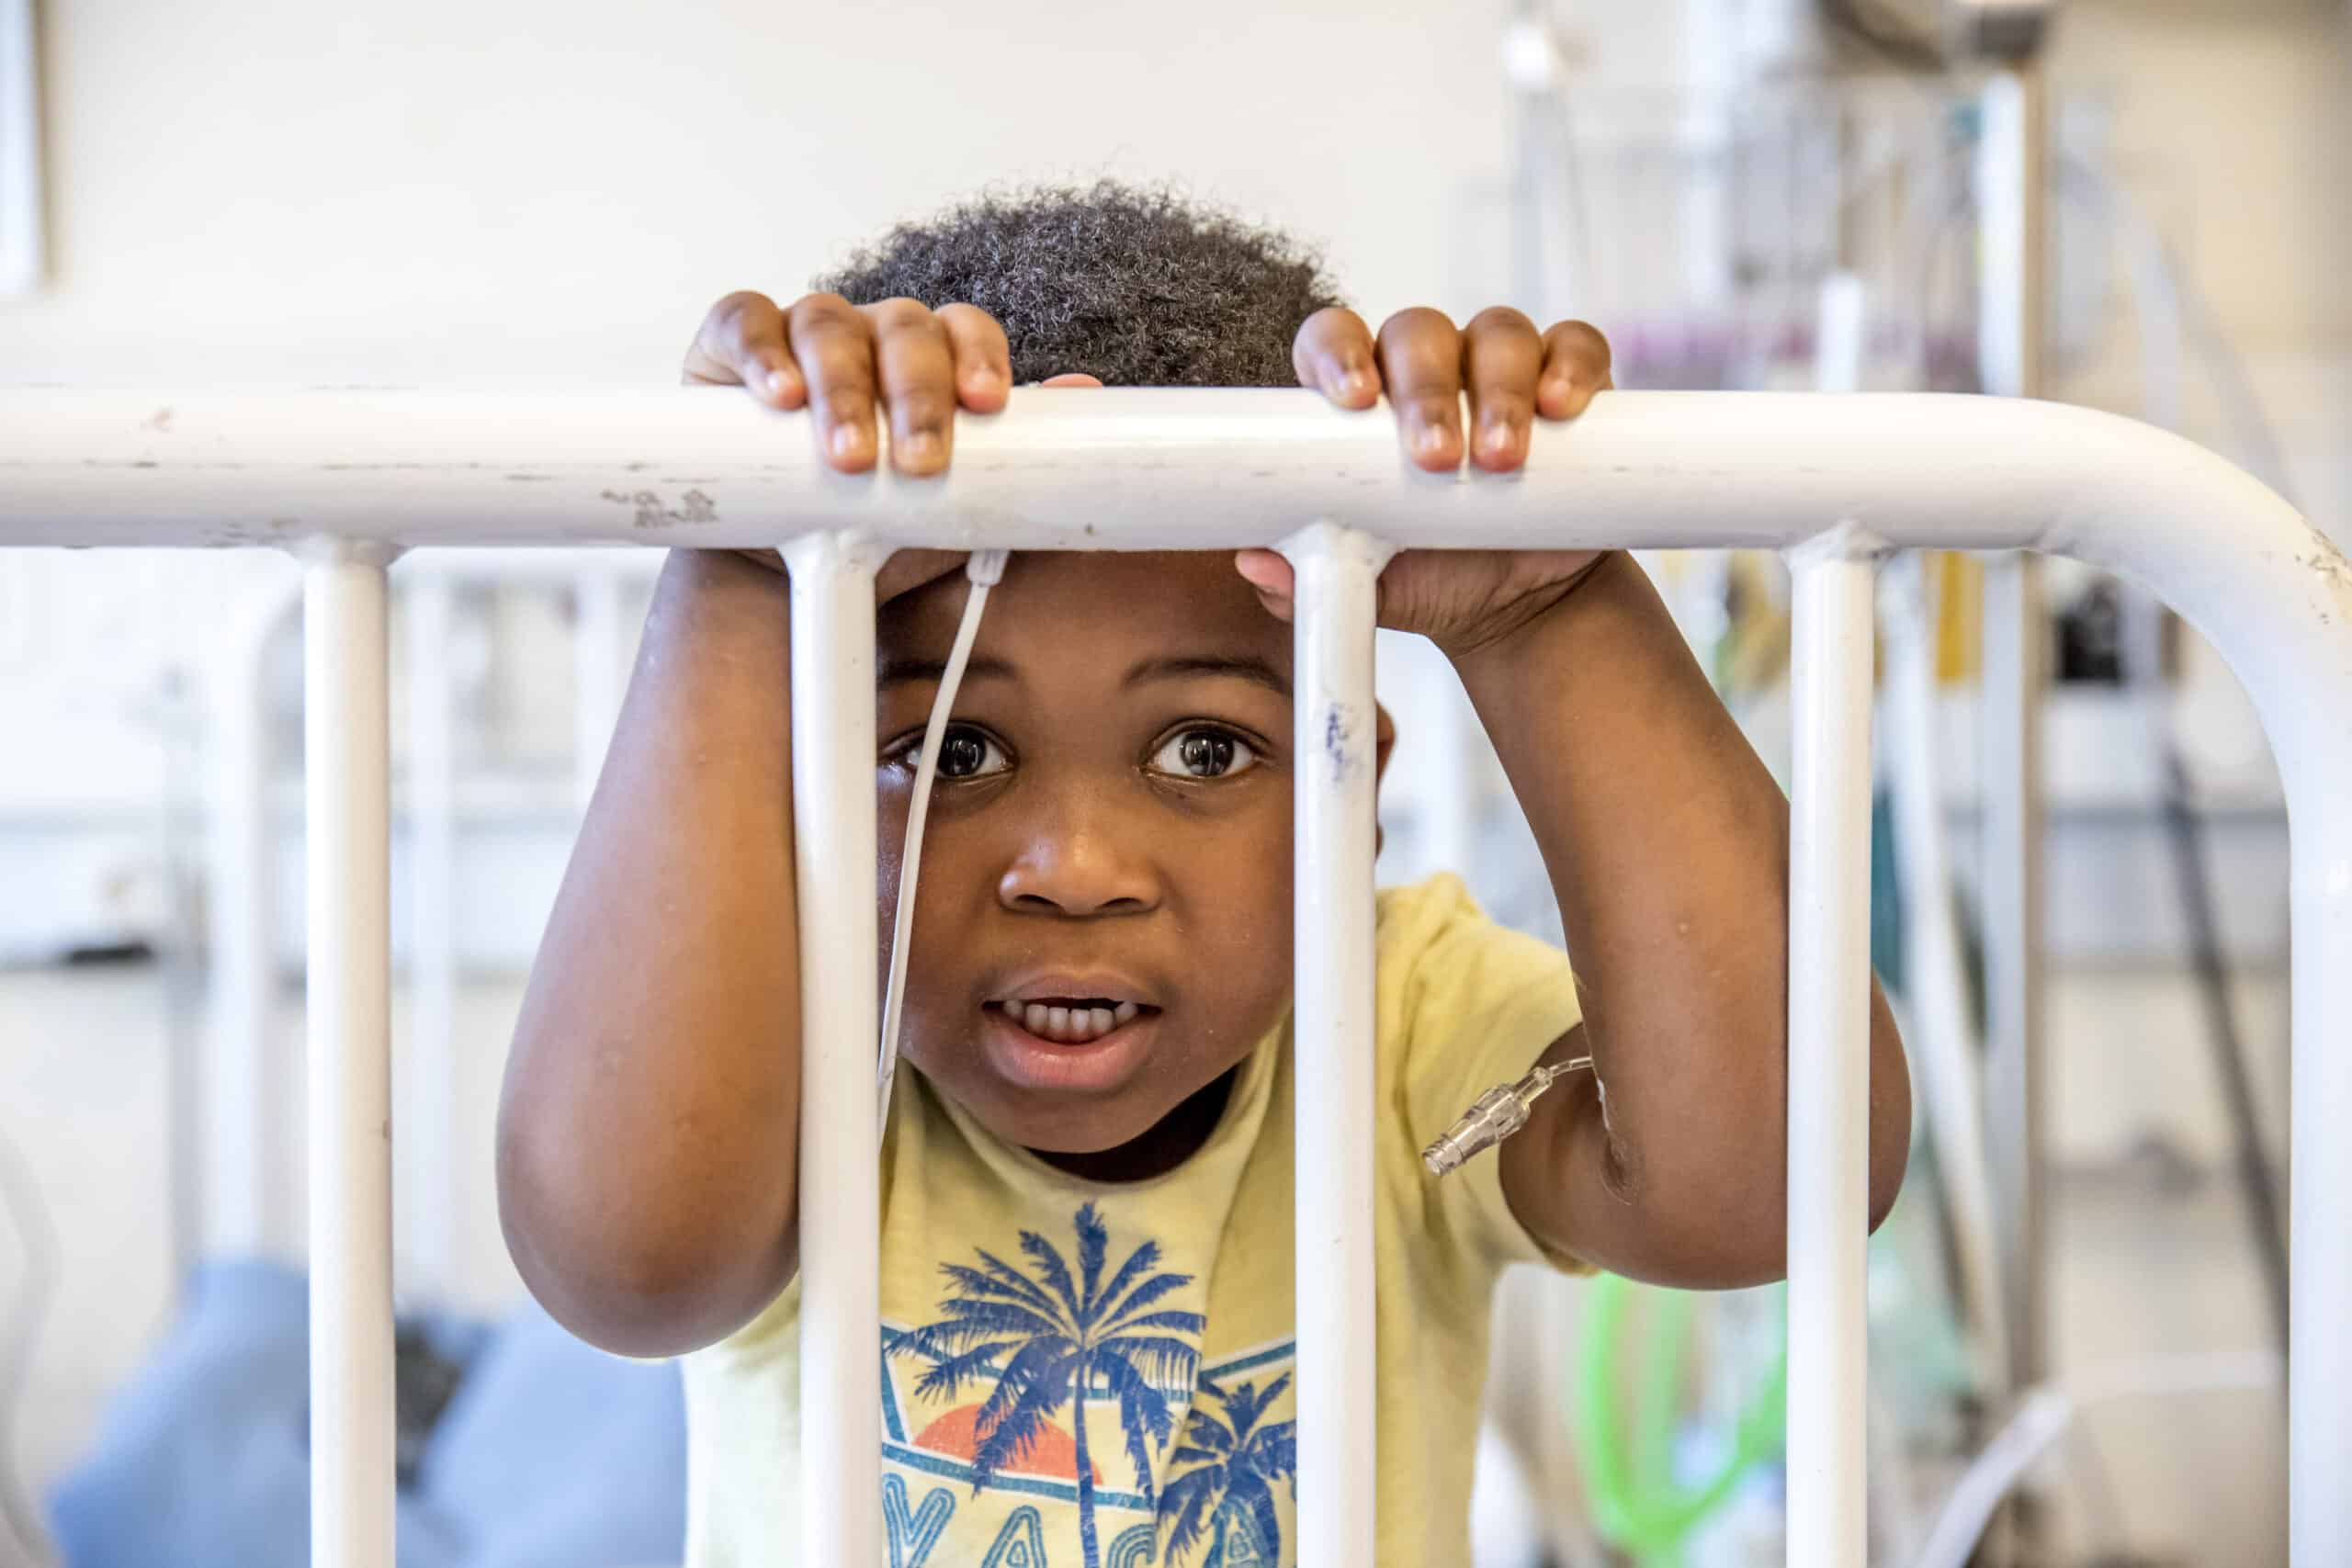 Ein kleines Kind späht mit großen, neugierigen Augen und leicht geöffnetem Mund durch die Gitterstäbe eines weißen Kinderbetts in einem hell erleuchteten Raum und umklammert mit den Händen die Gitterstäbe. © Fotografie Tomas Rodriguez